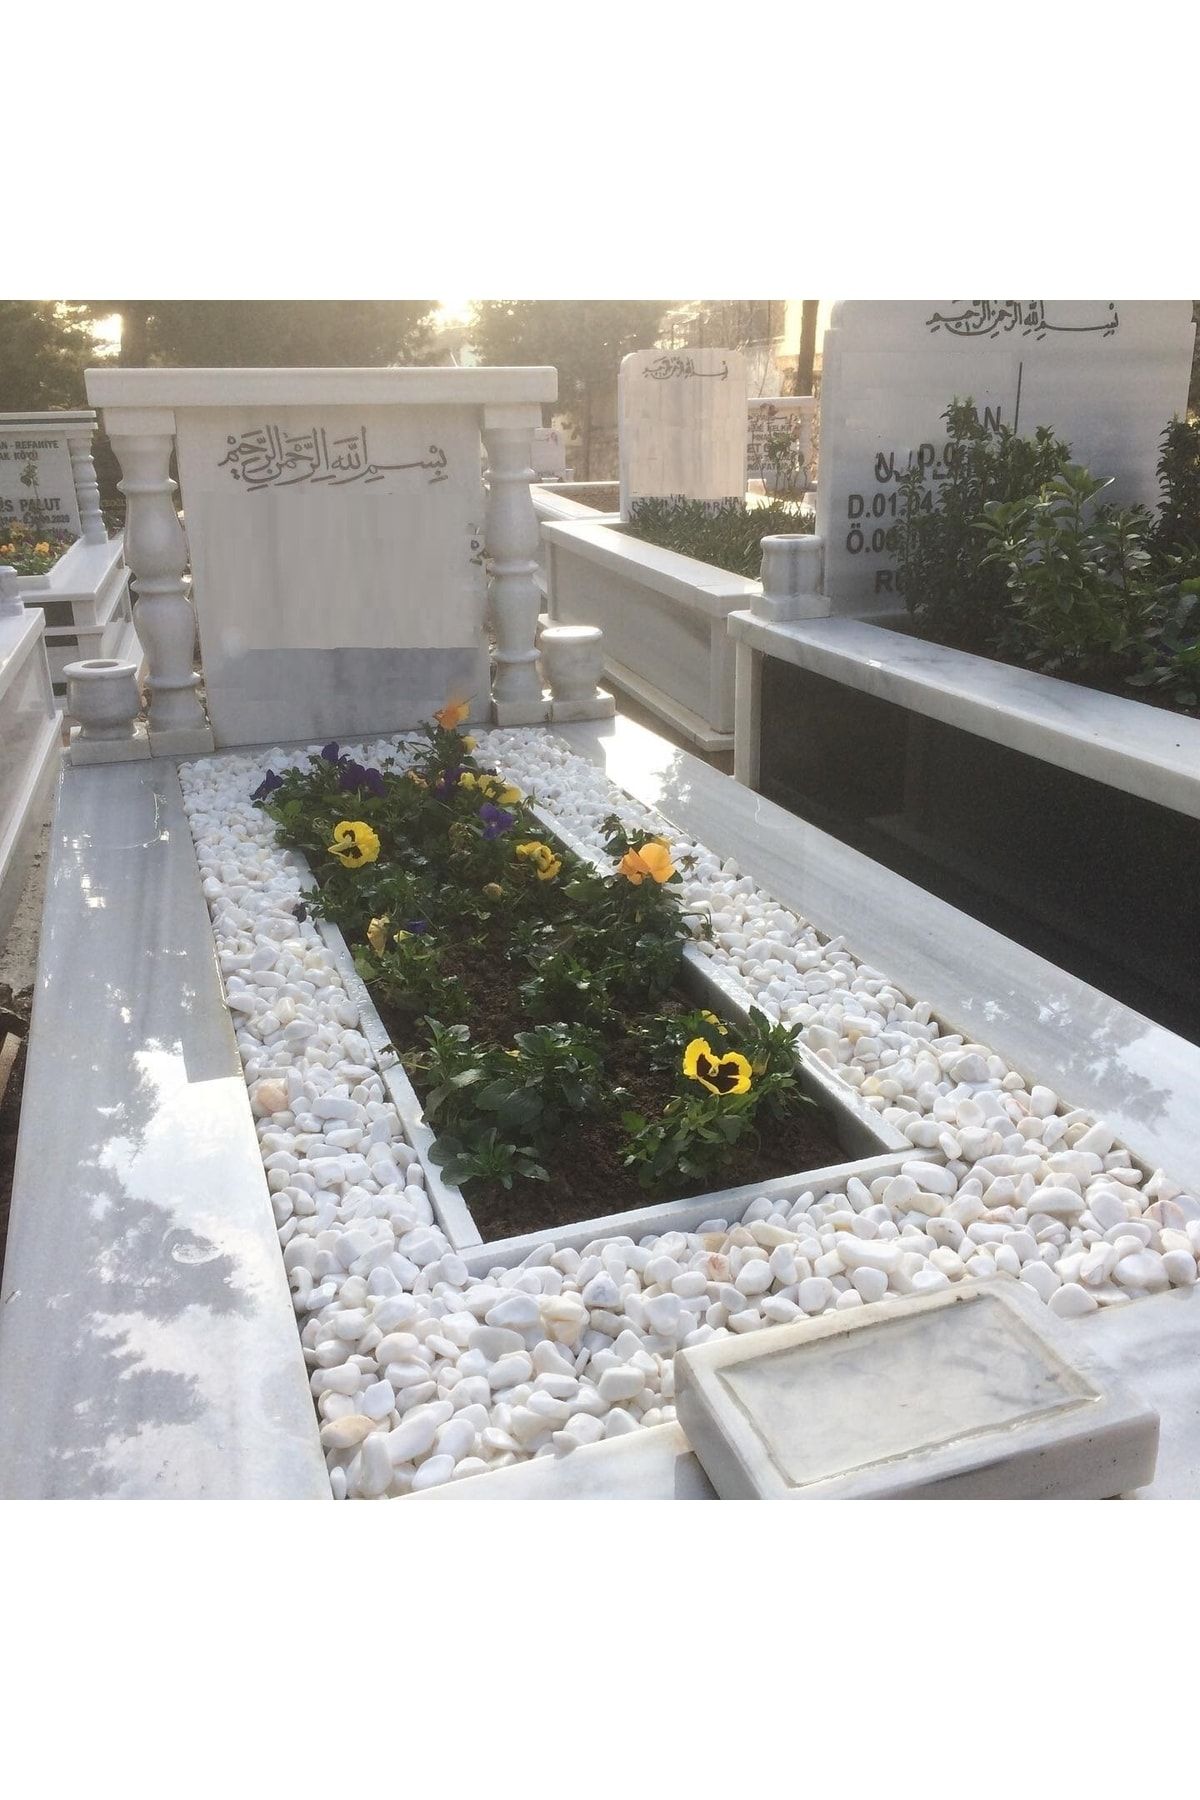 Asenya Mezar Taşı 25 Kg 1-2 Cm Beyaz Dolomit Taş Dere Çakıl Taşı Bahçe Süs Taşı Mezar Süsleme Taşı